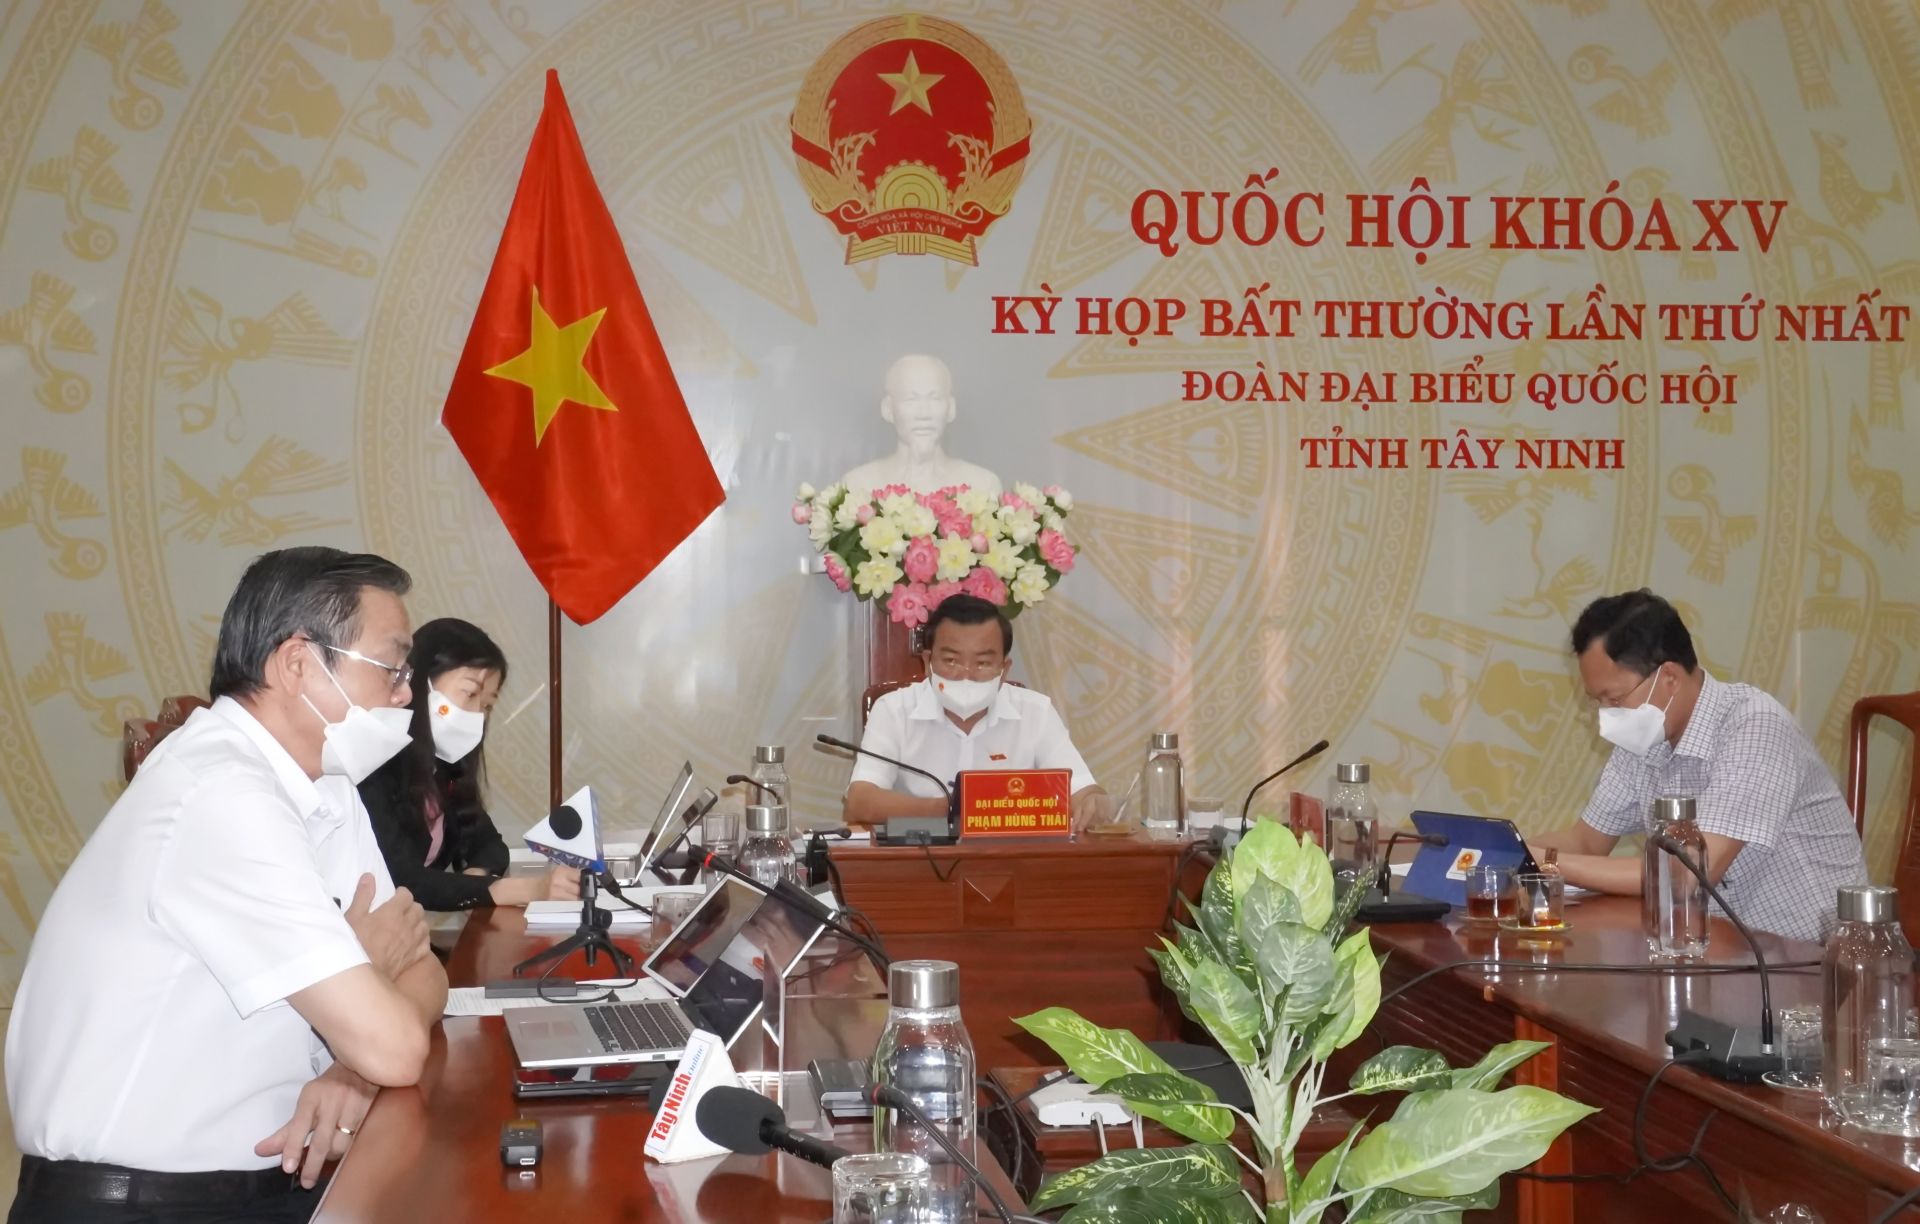 Điểm báo in Tây Ninh ngày 10.01.2022